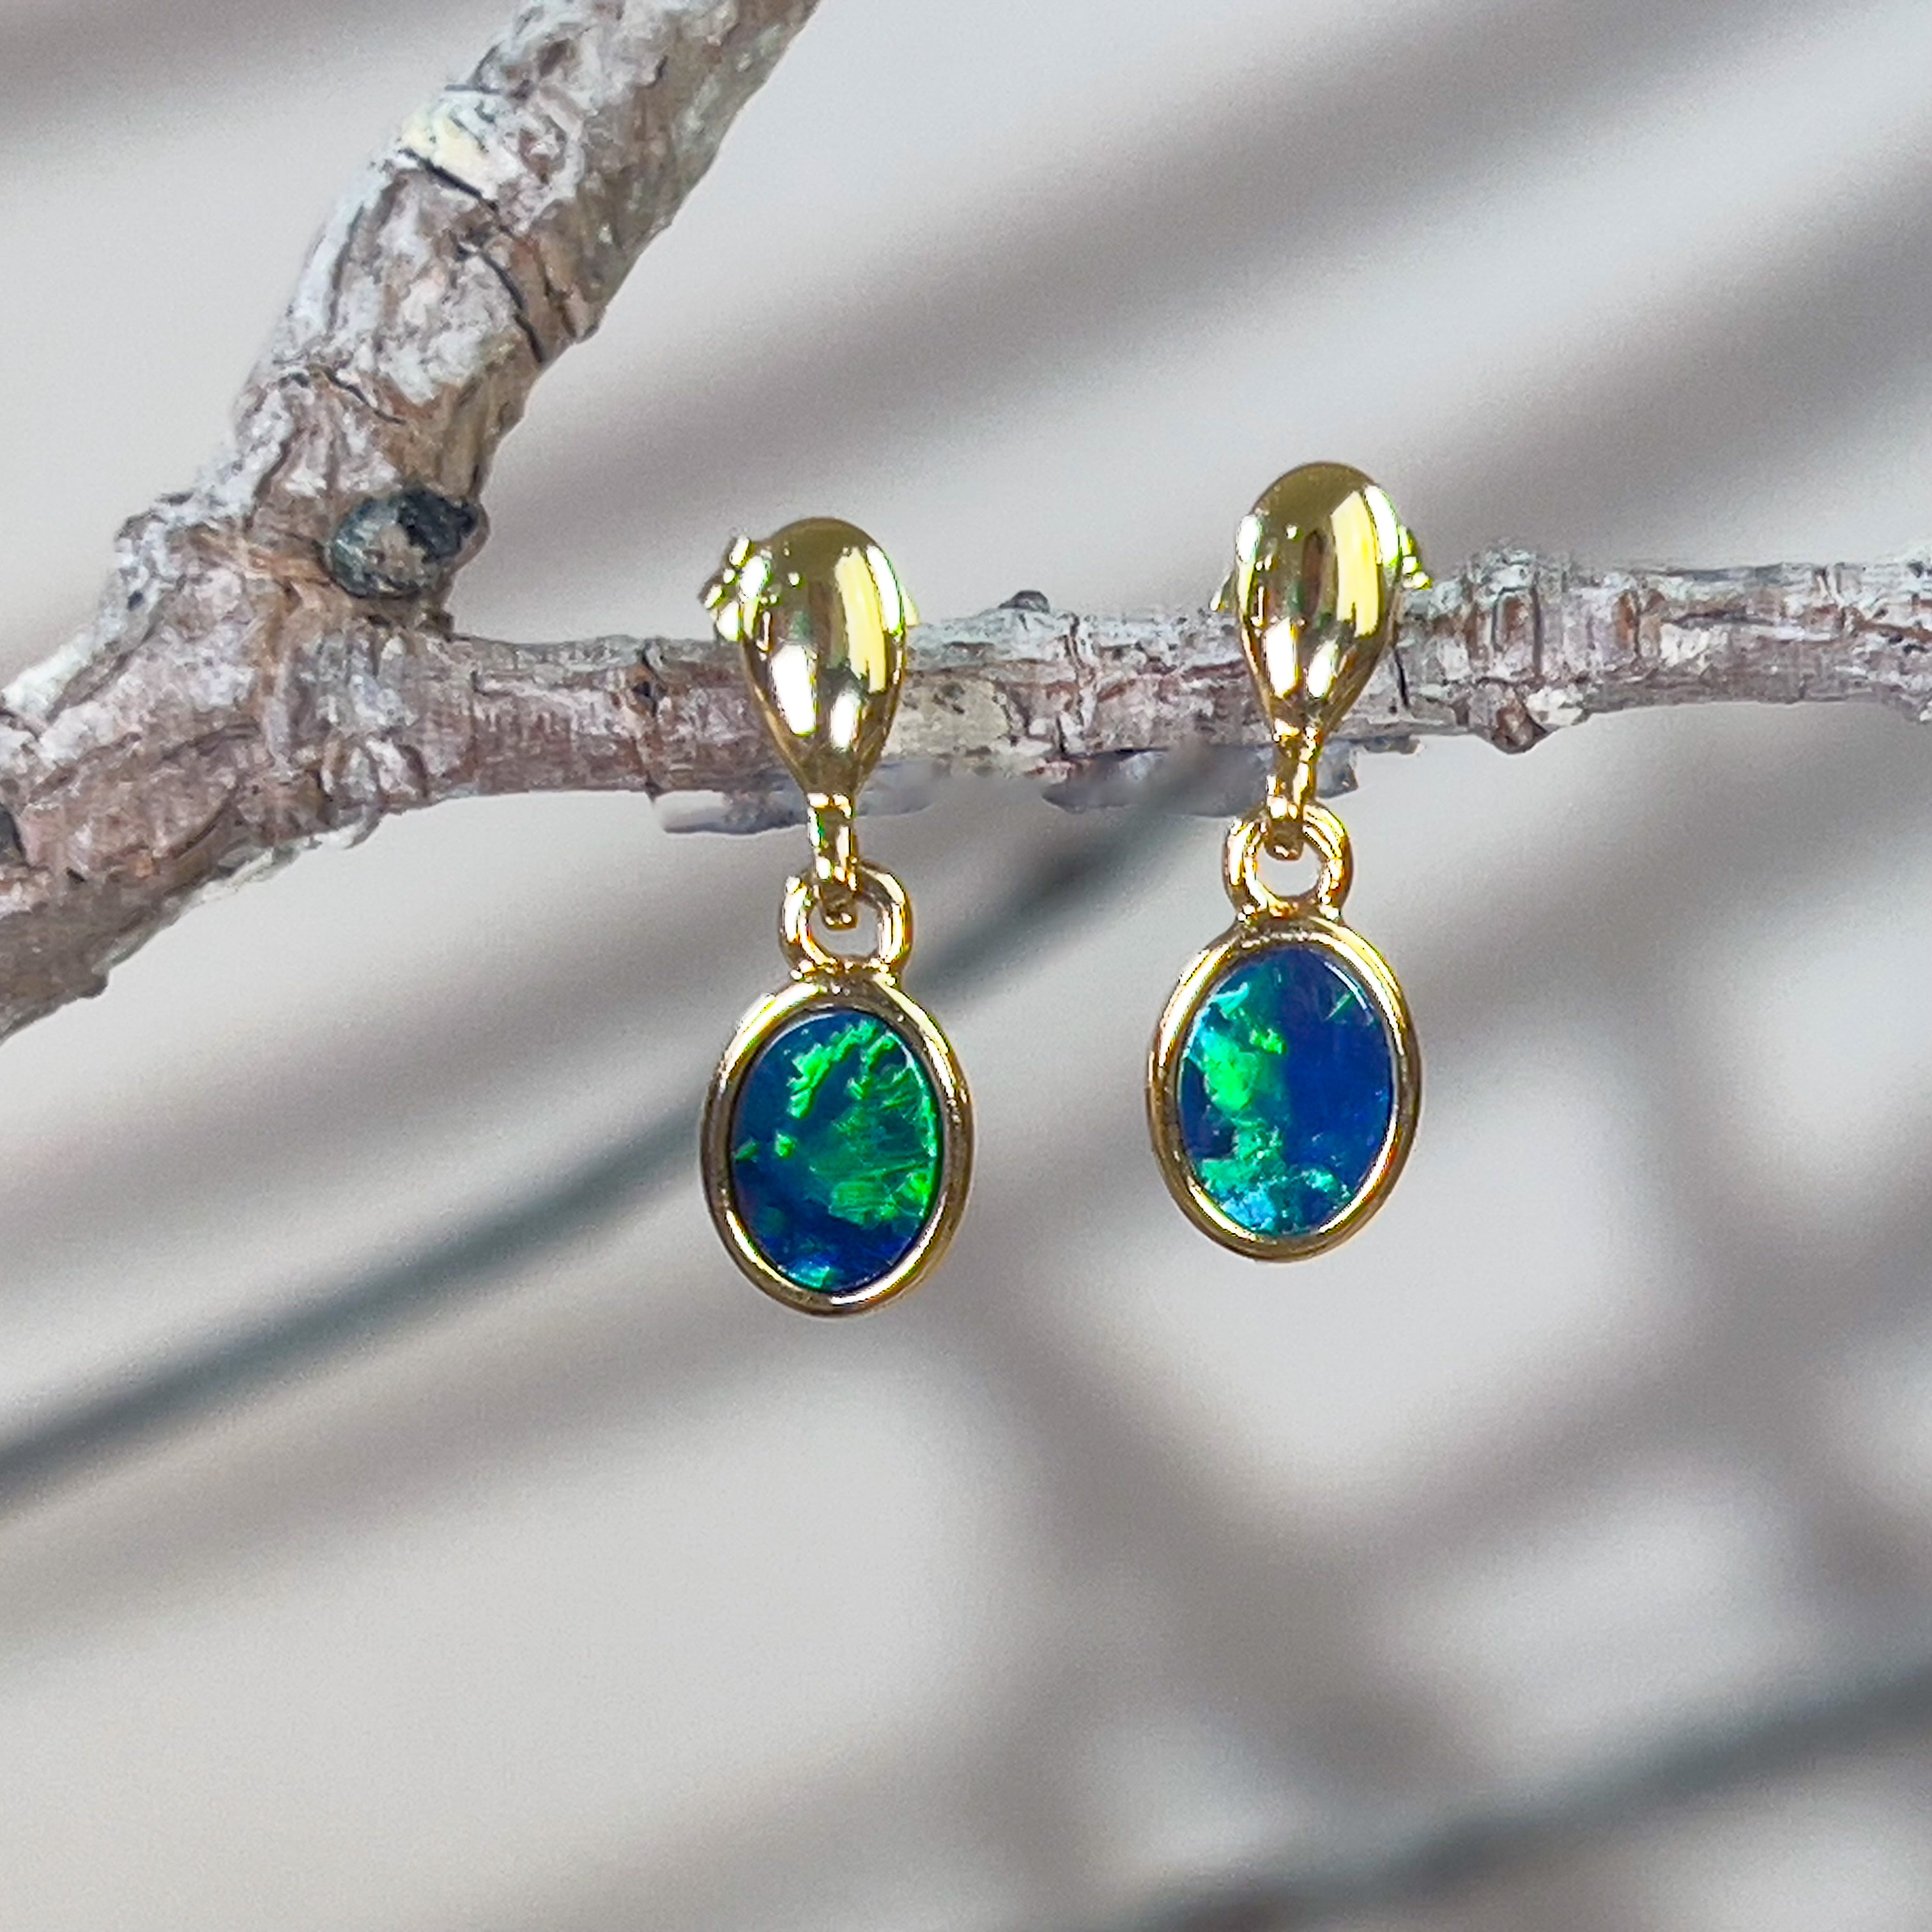 Gold plated dangling silver green blue opal doublet earring dangling - Masterpiece Jewellery Opal & Gems Sydney Australia | Online Shop